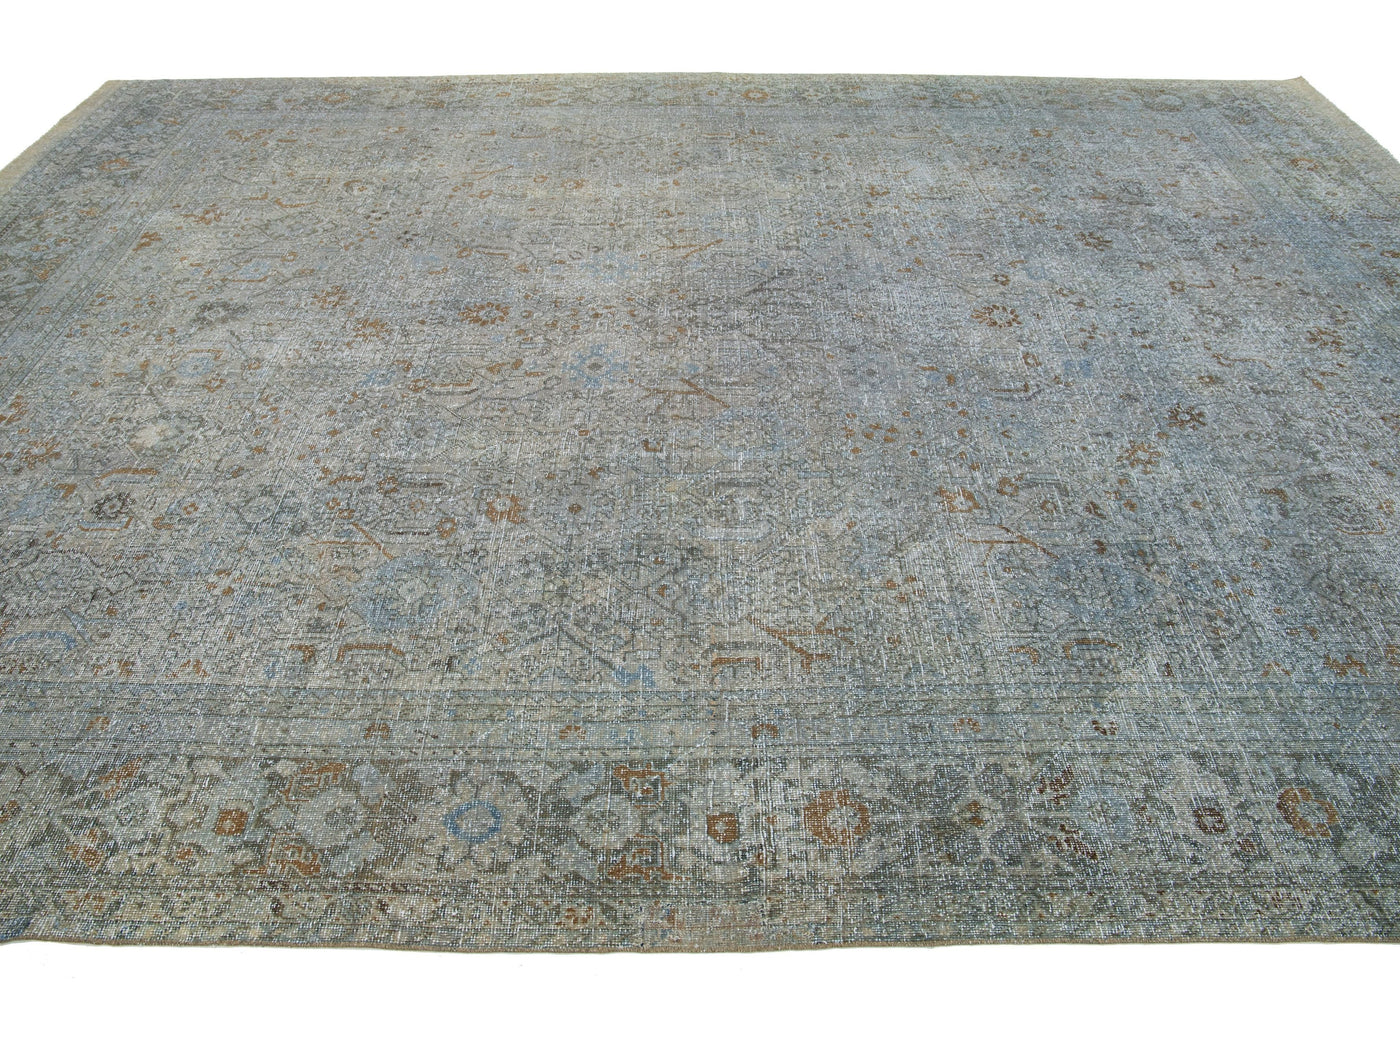 Antique Tabriz Wool Rug 10 X 14